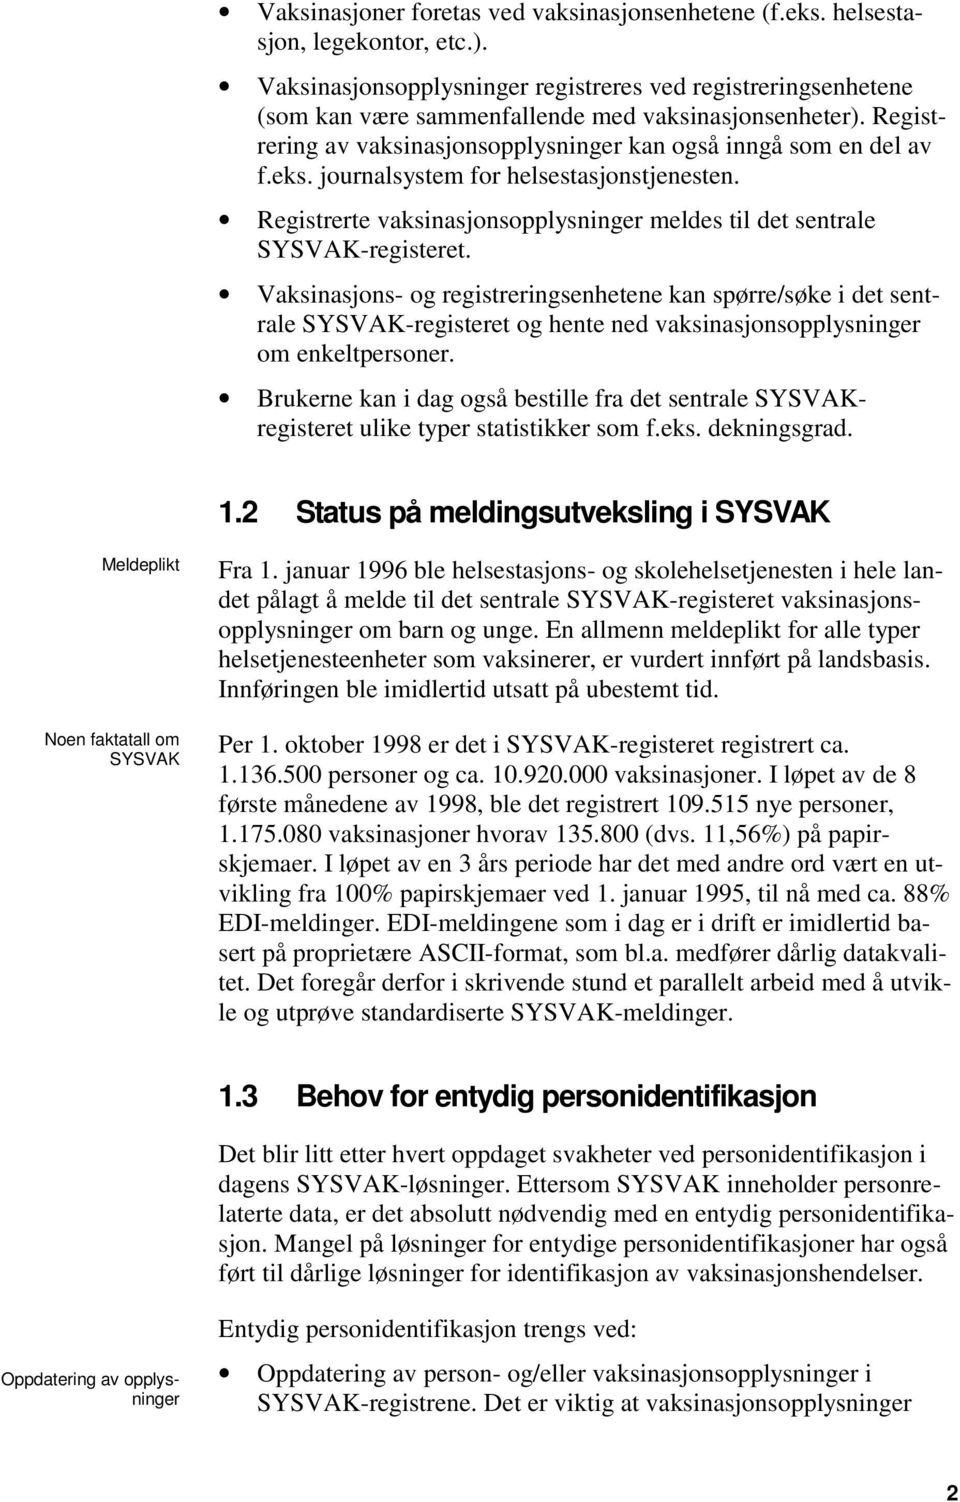 journalsystem for helsestasjonstjenesten. Registrerte vaksinasjonsopplysninger meldes til det sentrale SYSVAK-registeret.